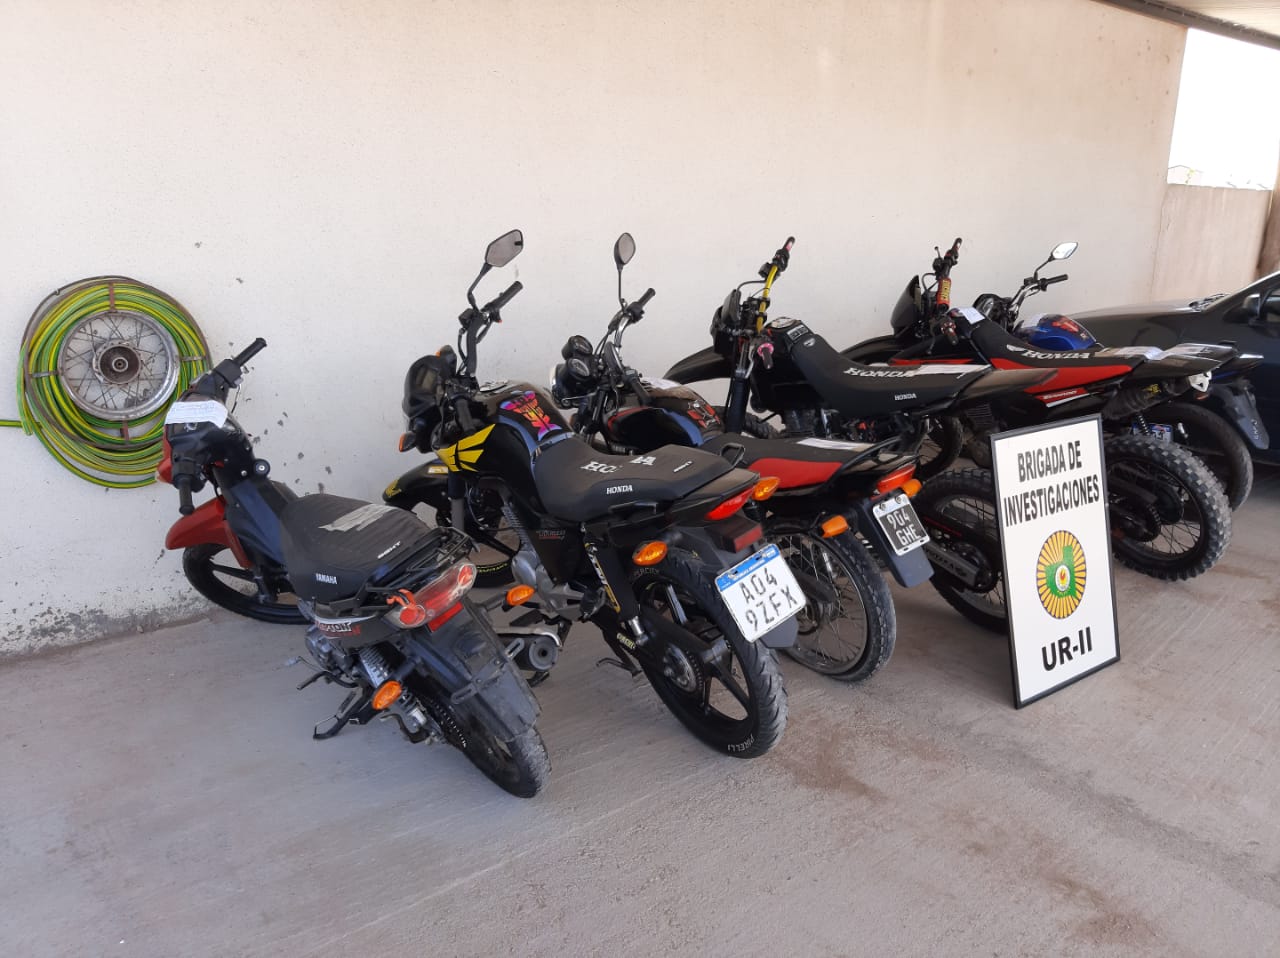 La policía y el municipio piquense coordinarán acciones para tratar la problemática de las “picadas” de motos